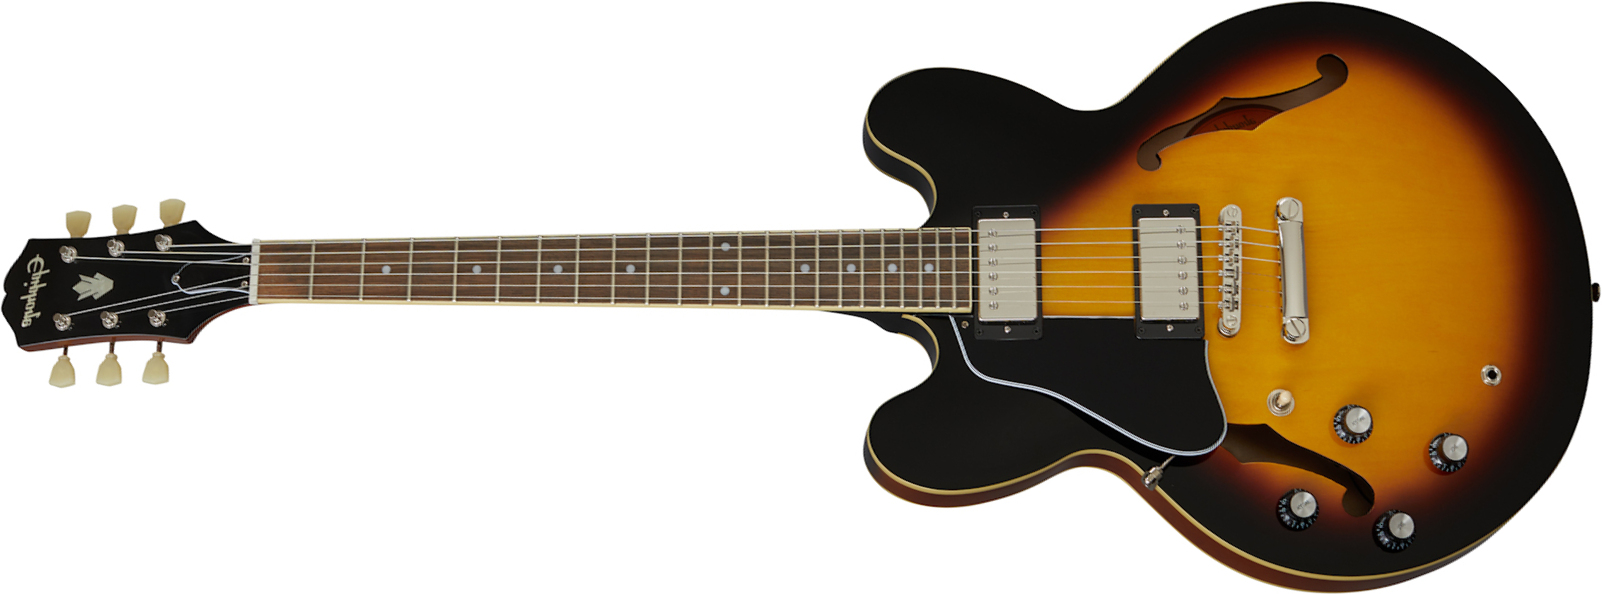 Epiphone Es-335 Lh Inspired By Gibson Original Gaucher 2h Ht Rw - Vintage Sunburst - E-Gitarre für Linkshänder - Main picture